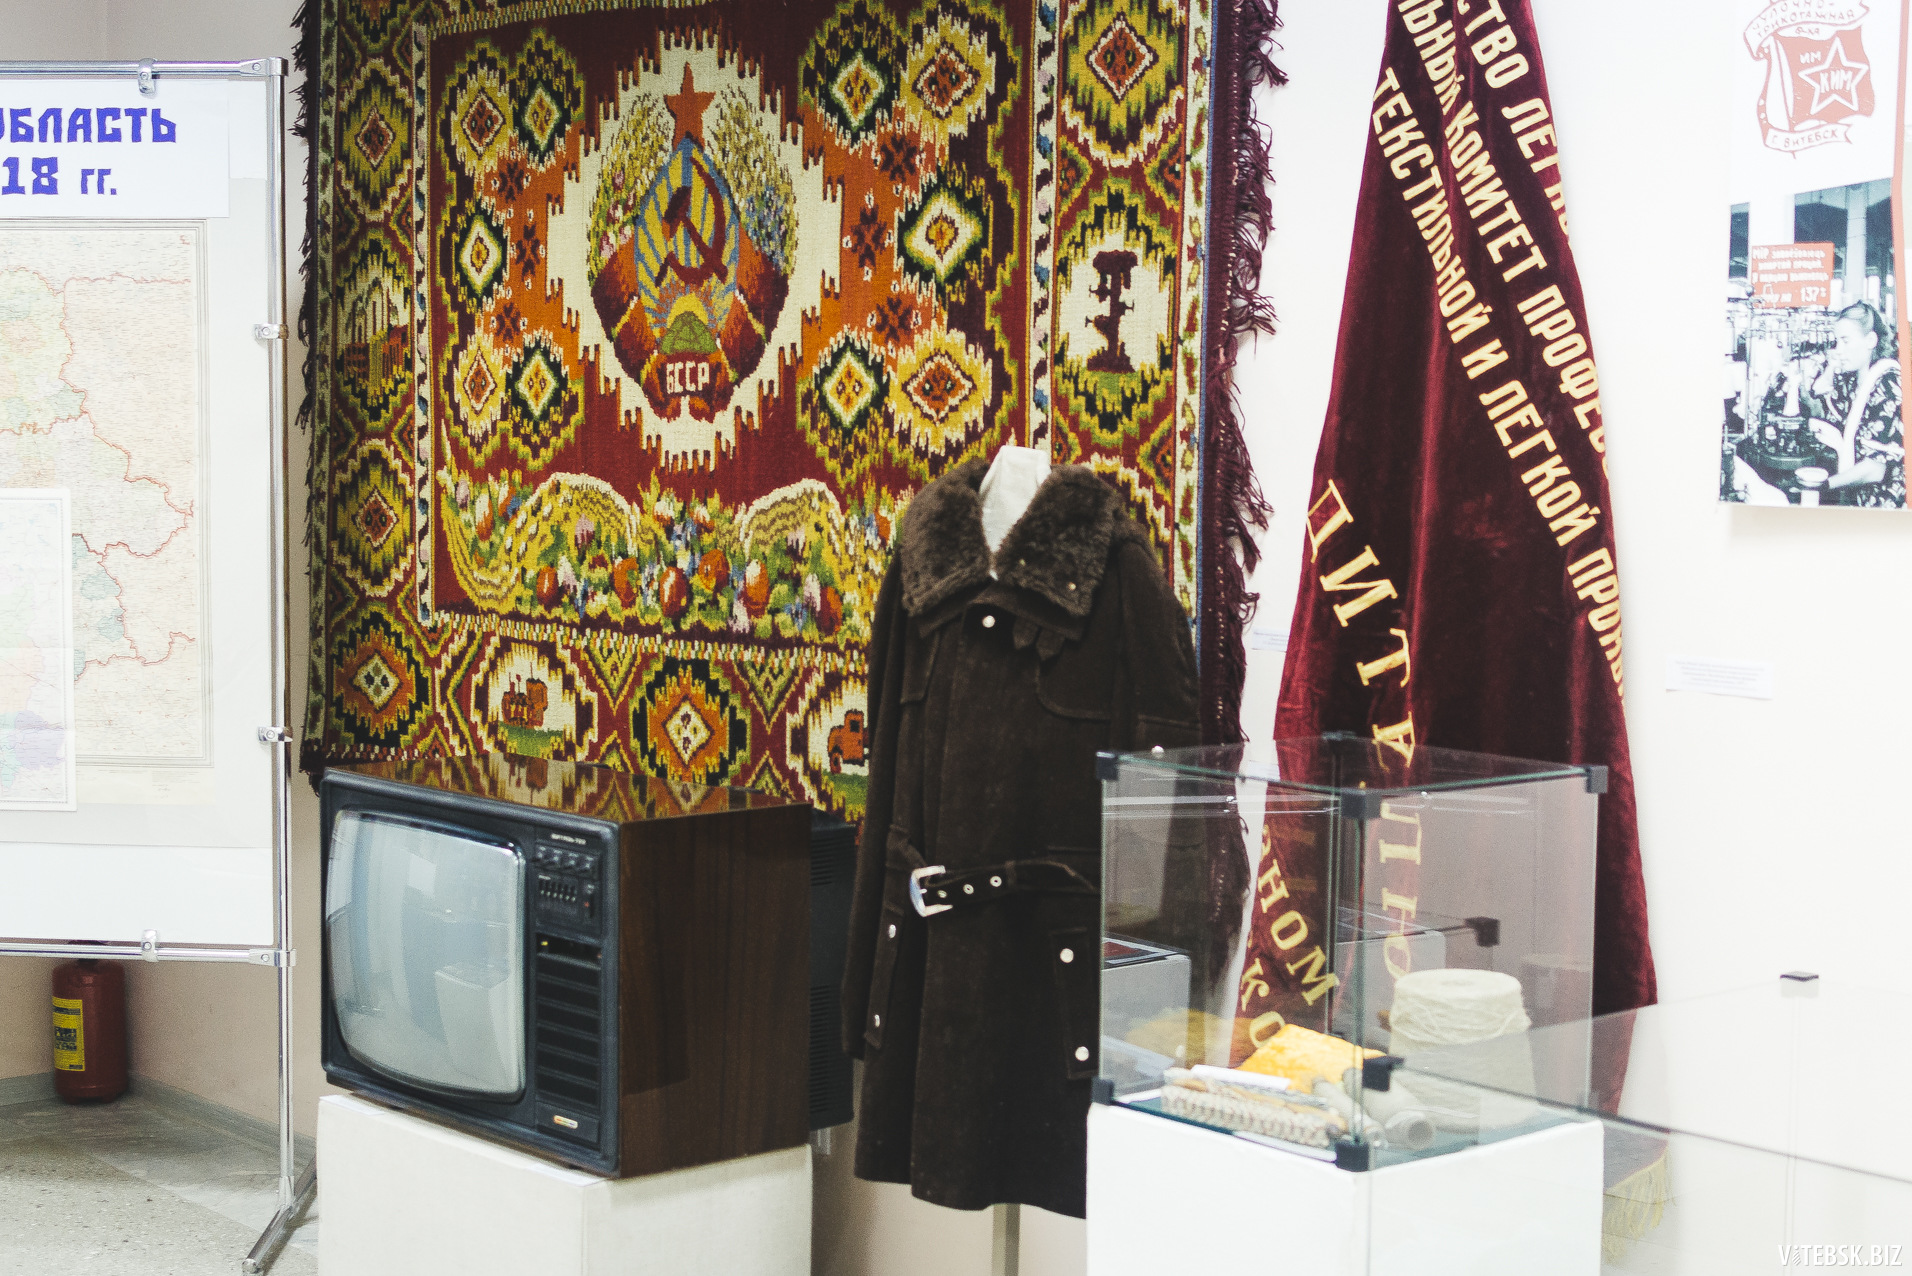 Ковёр, кинескопный телевизор и модное пальто — вещи без которых не мог обойтись советский человек